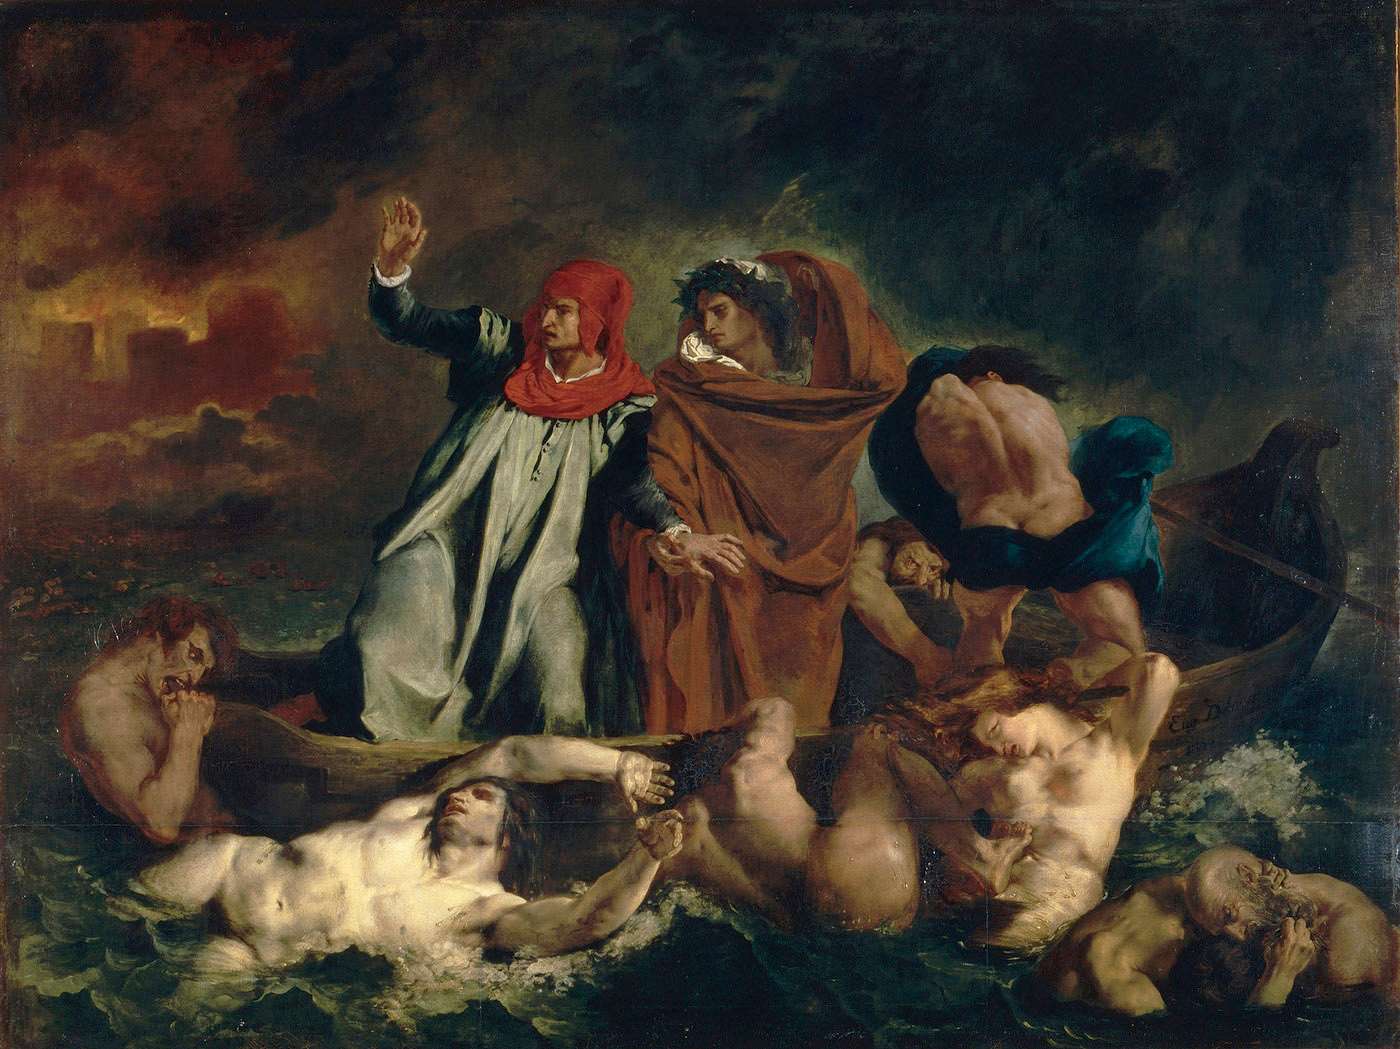 La Barca de Dante by Eugène Delacroix - 1822 Musée du Louvre